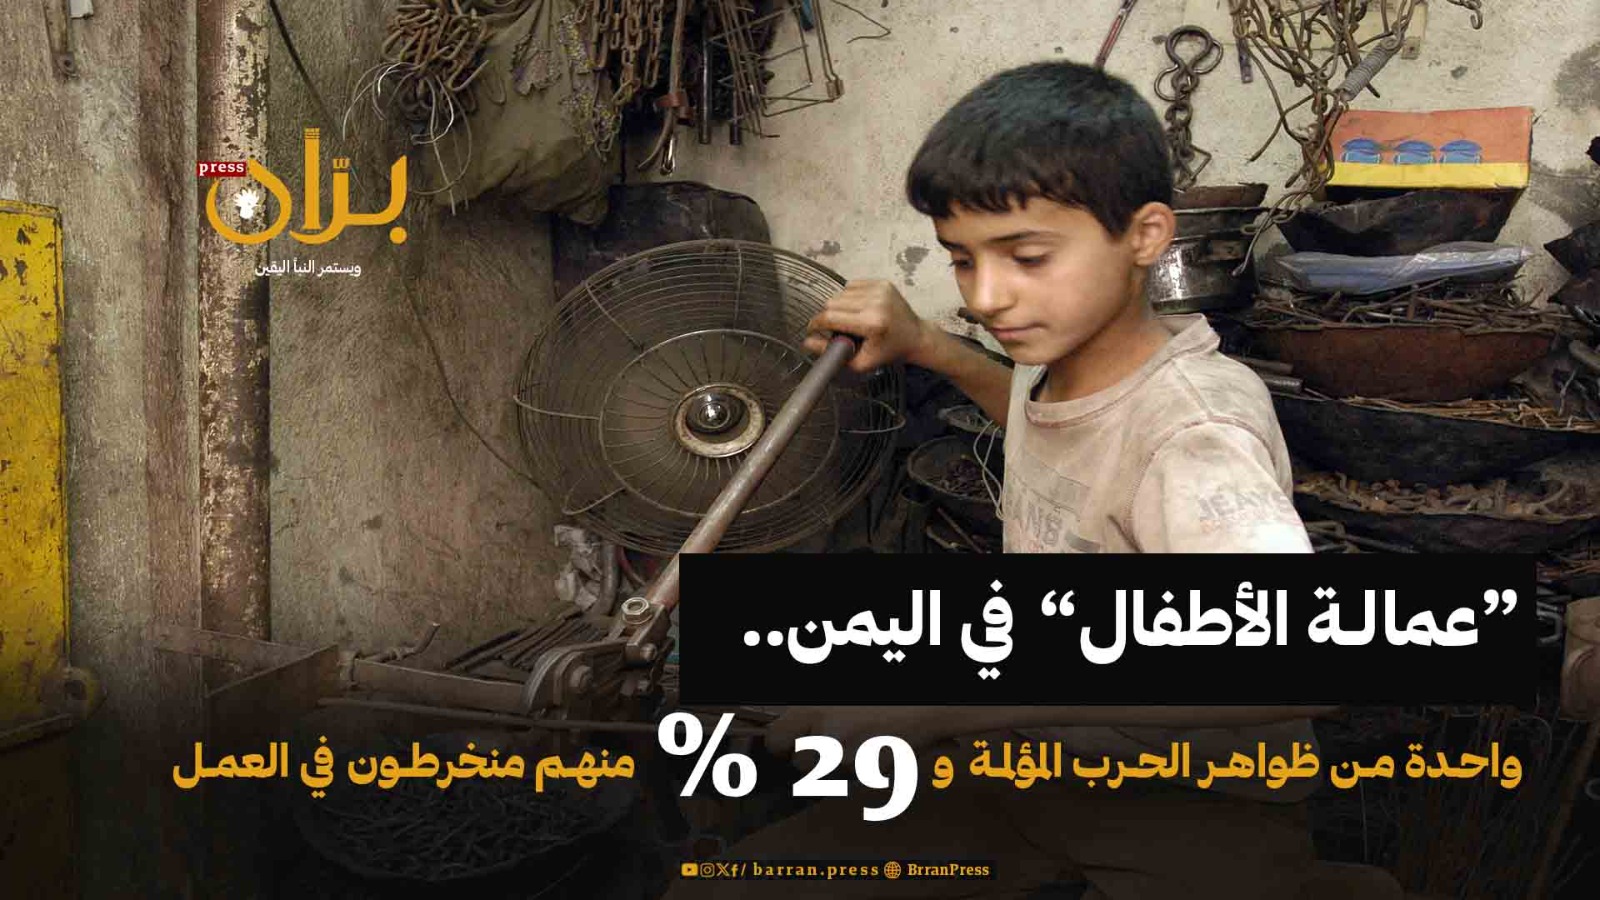 “عمالة الأطفال” في اليمن واحدة من ظواهر الحرب المؤلمة و29% منهم منخرطون في العمل (تقرير)